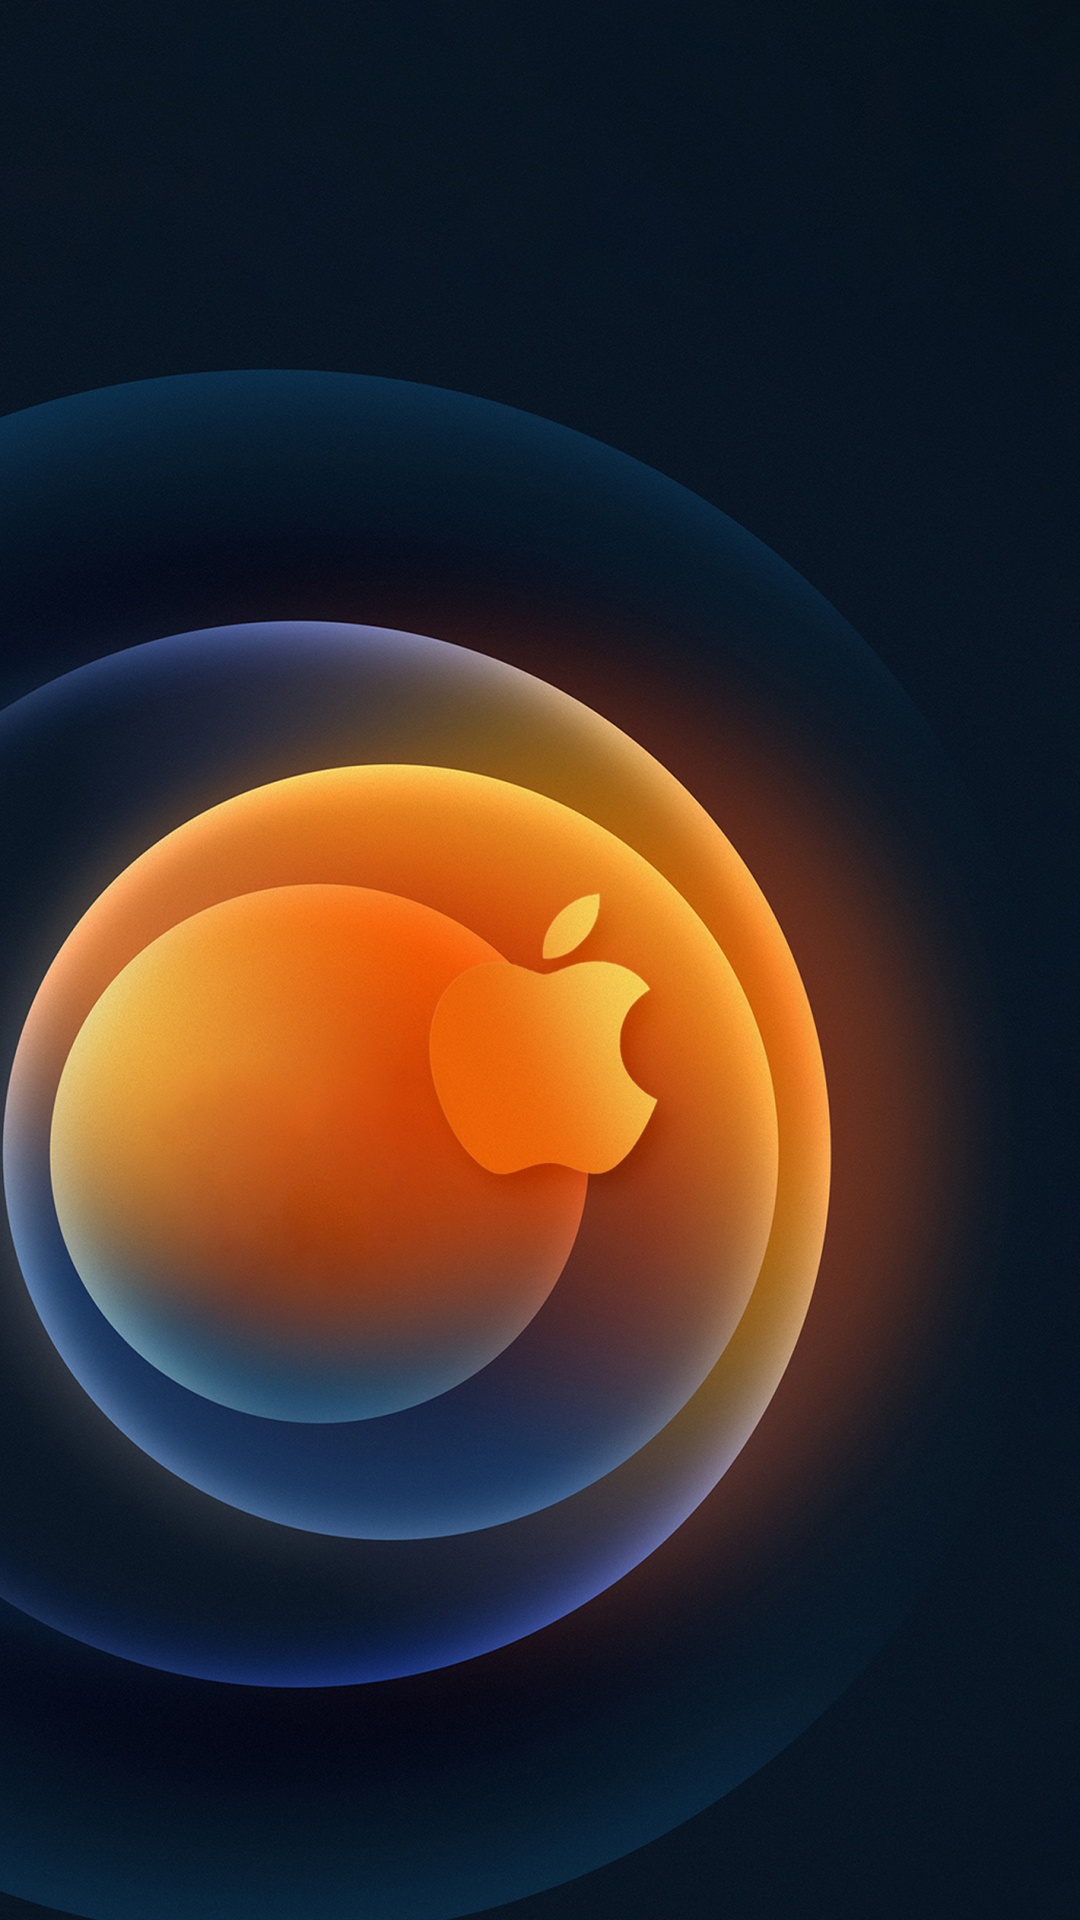 Apple, IPhone, Äpfeln, Orange, Farbigkeit. Wallpaper in 1080x1920 Resolution